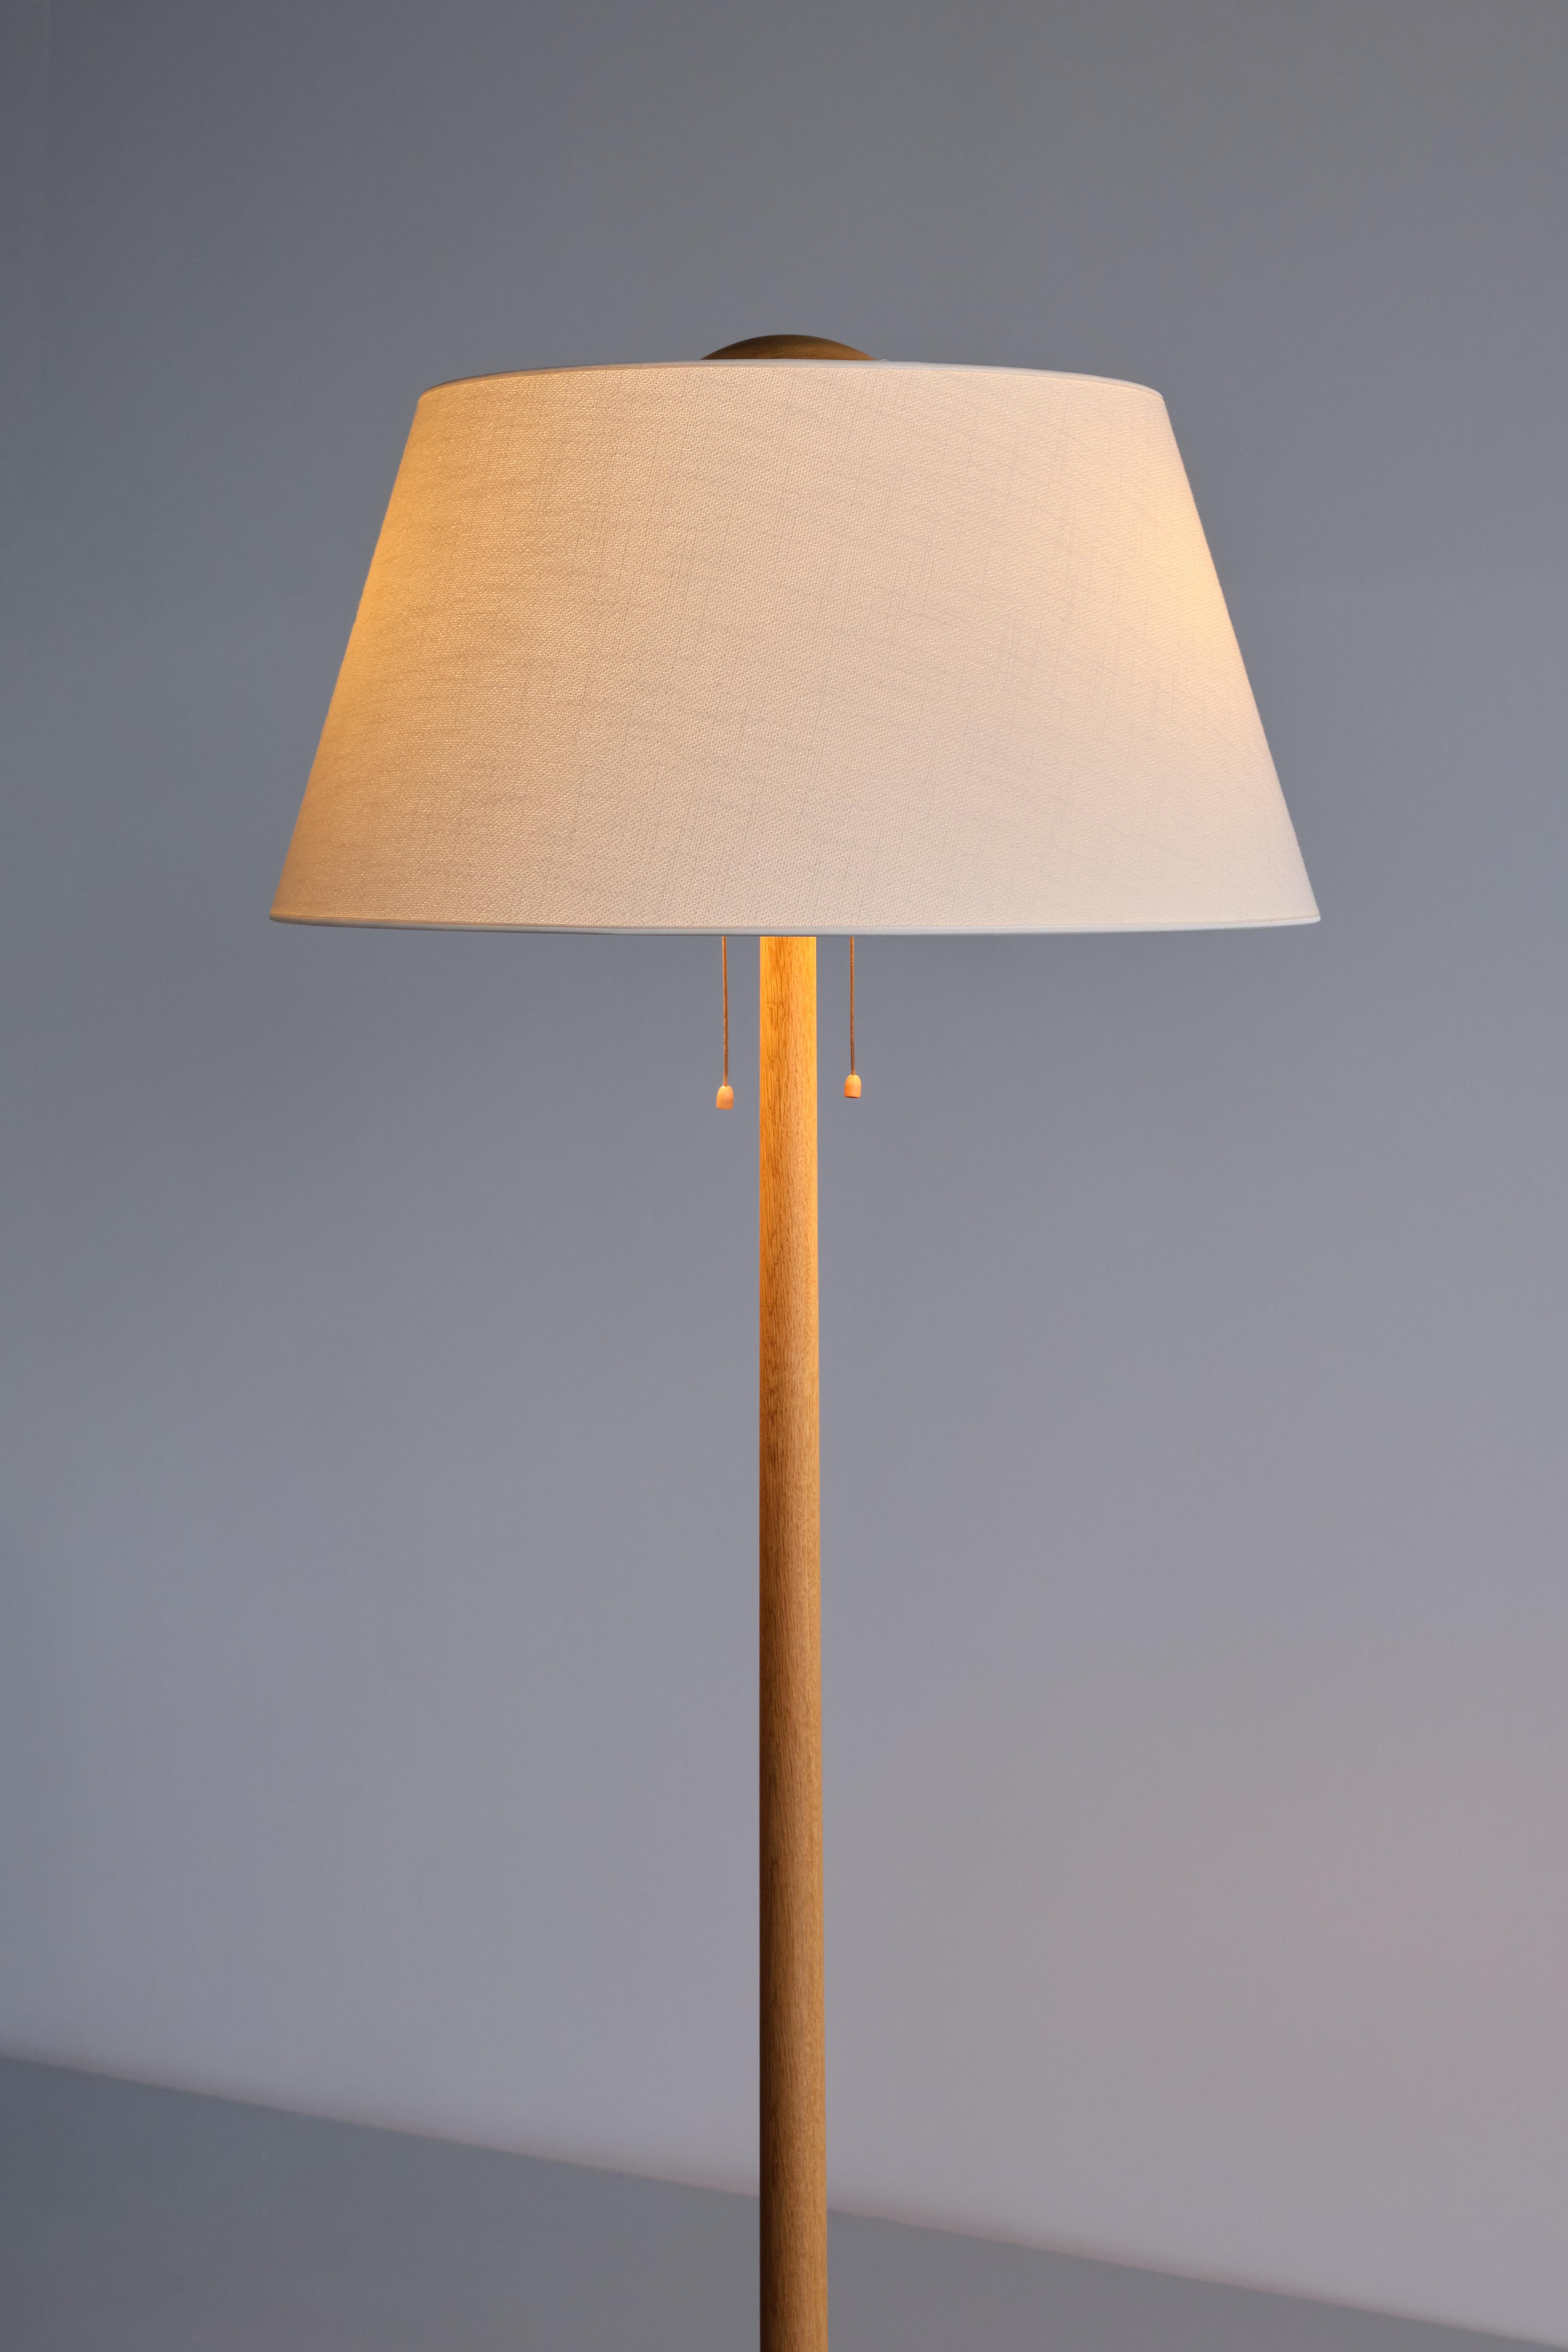 Swedish Modern Three Legged Floor Lamp in Oak, Svensk Hemslöjd, 1950s For Sale 2